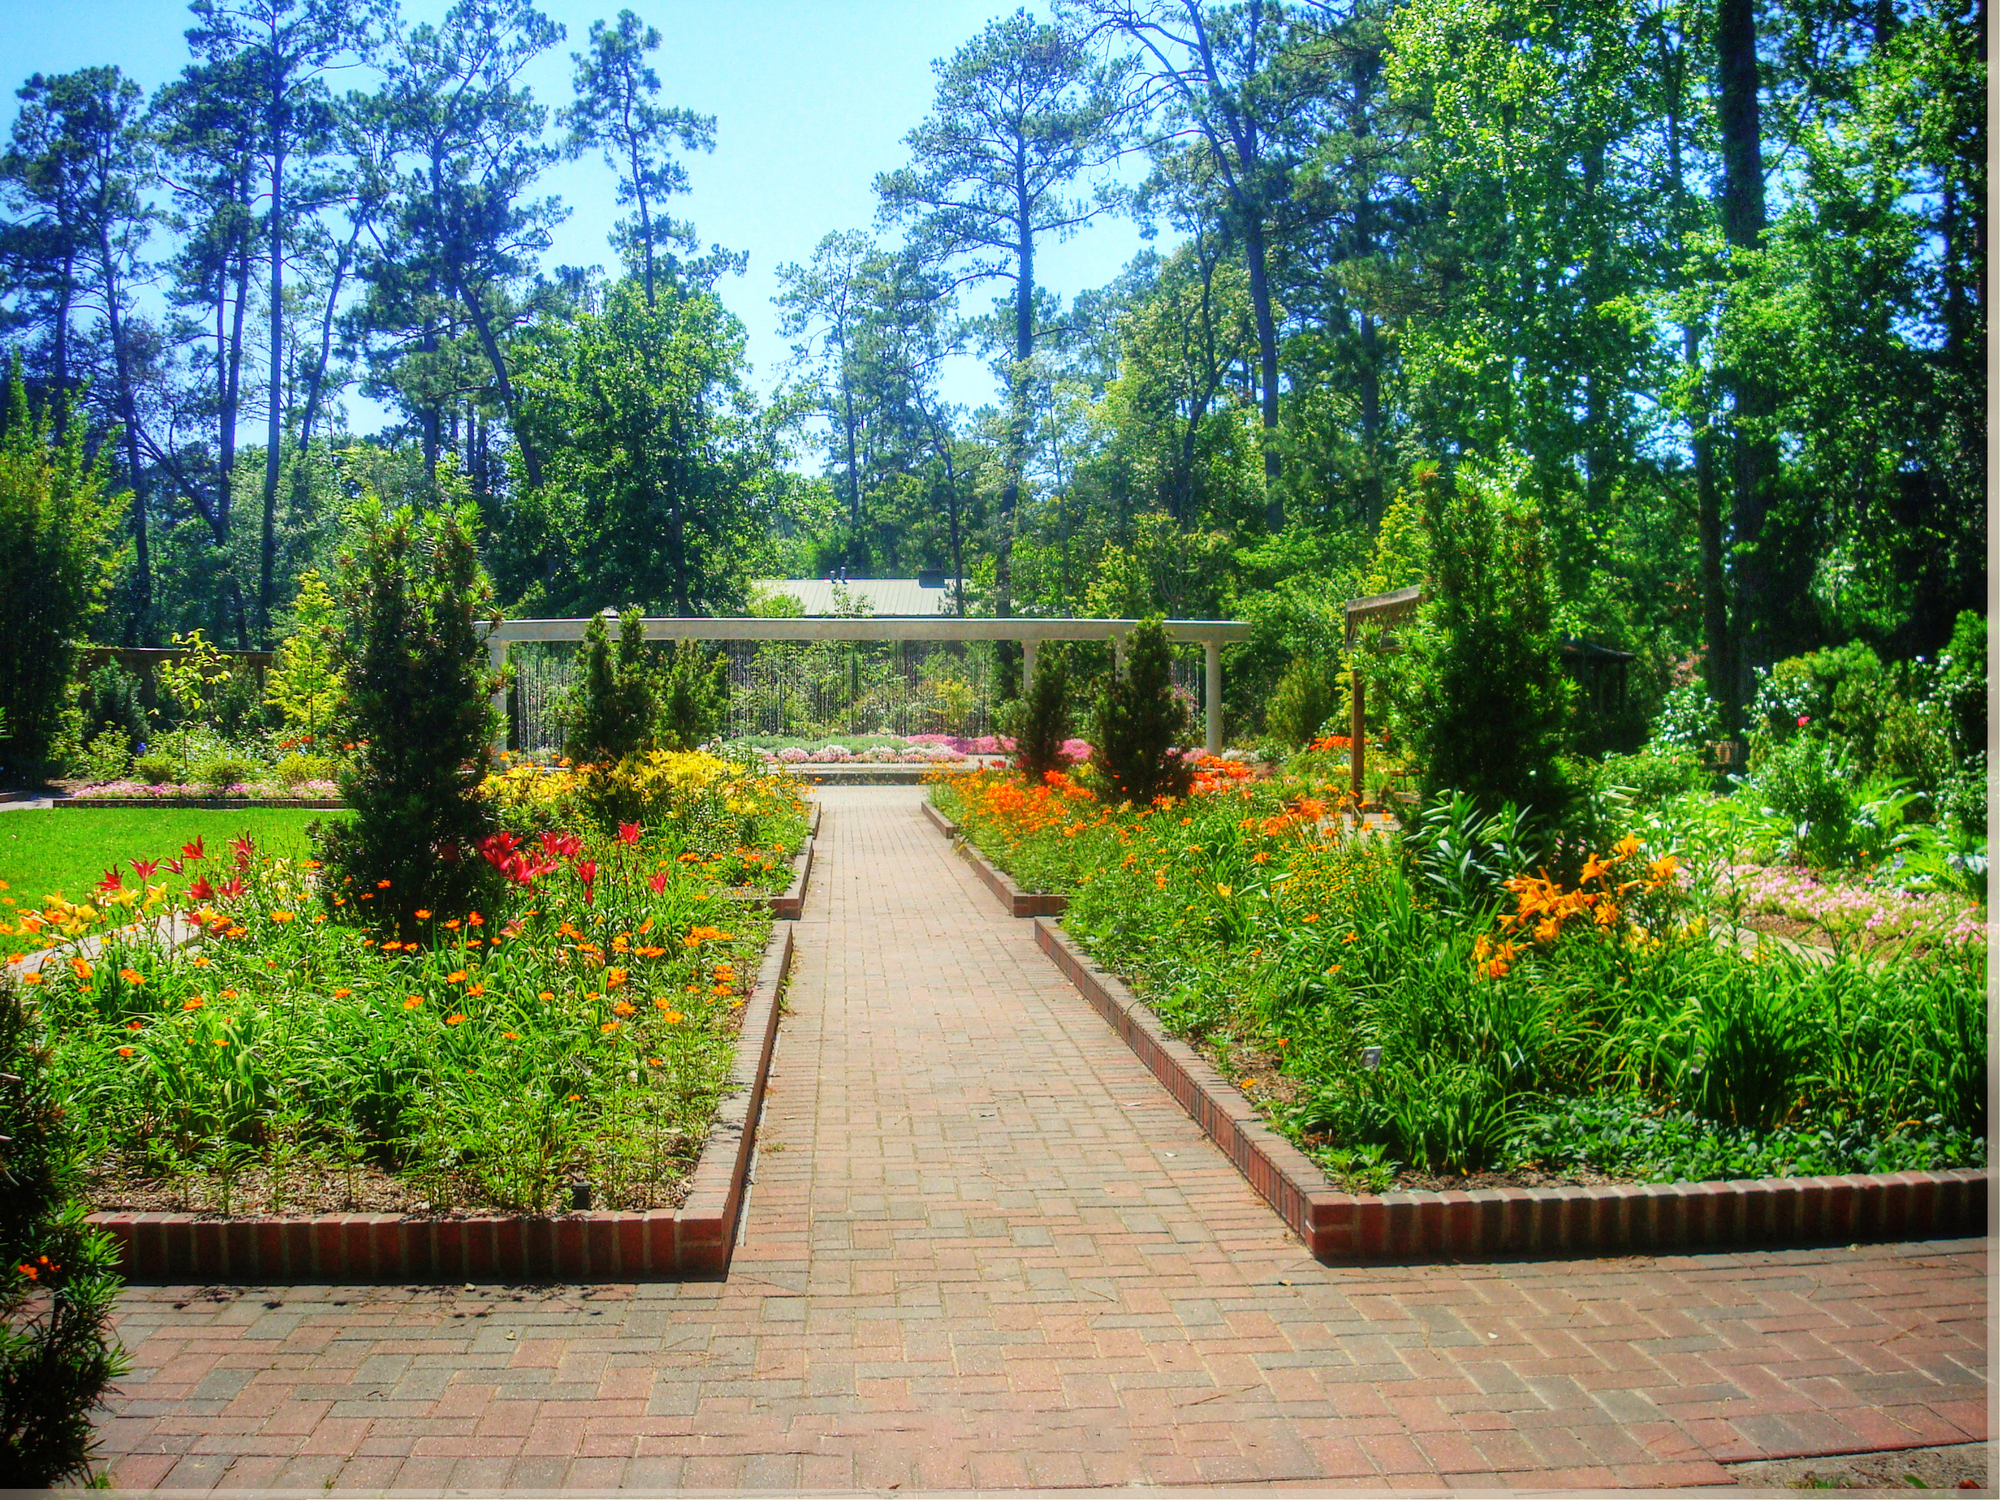 Houston Arboretum